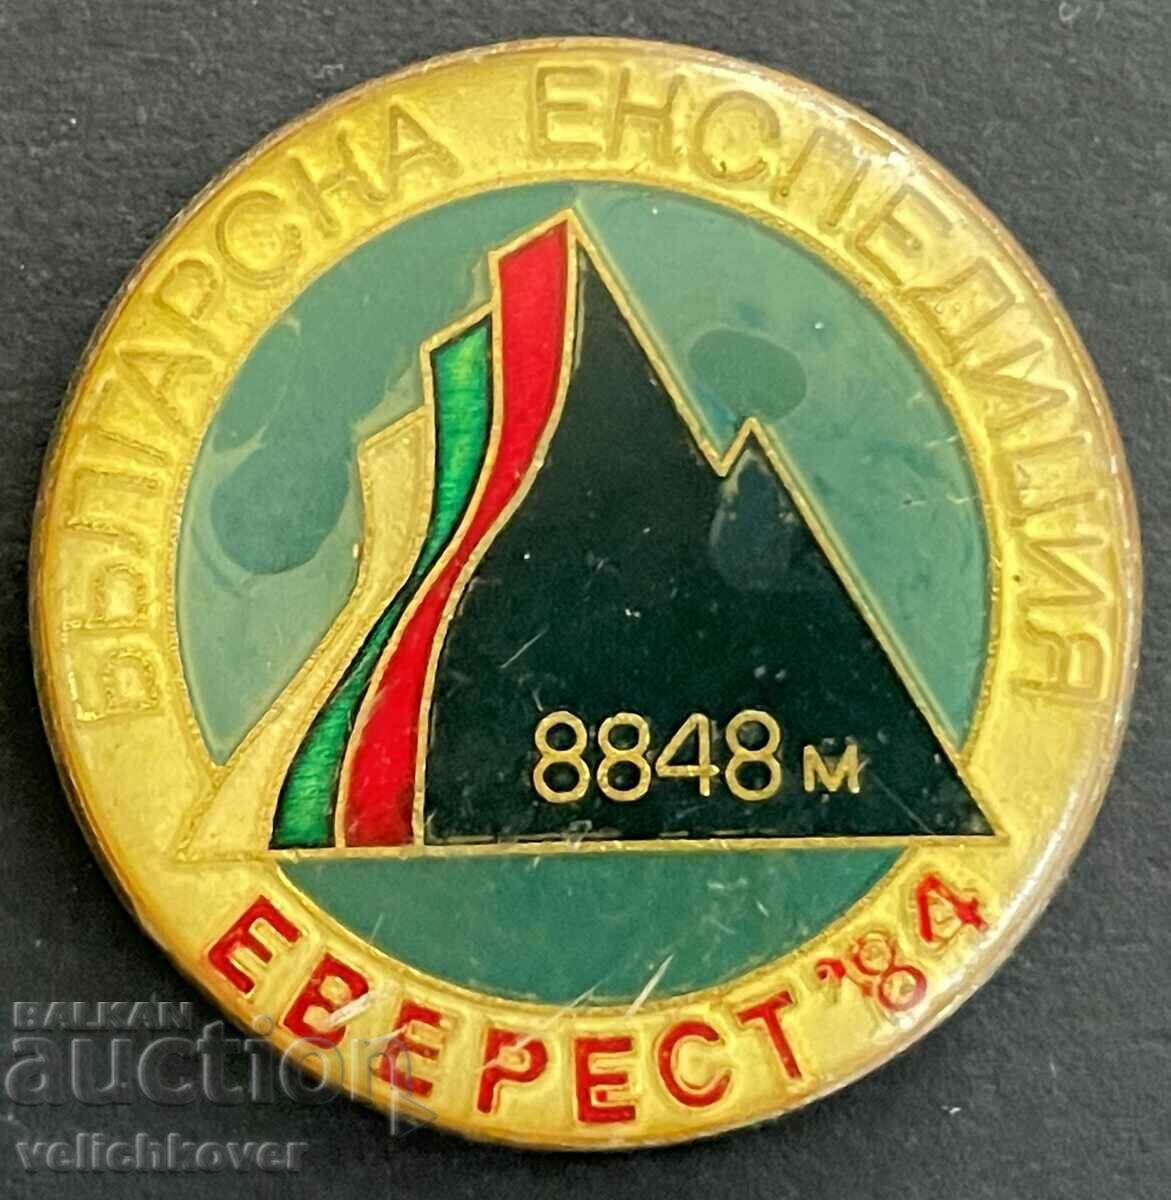 33831 България знак Алпинистка експедиция Еверест Хималаи